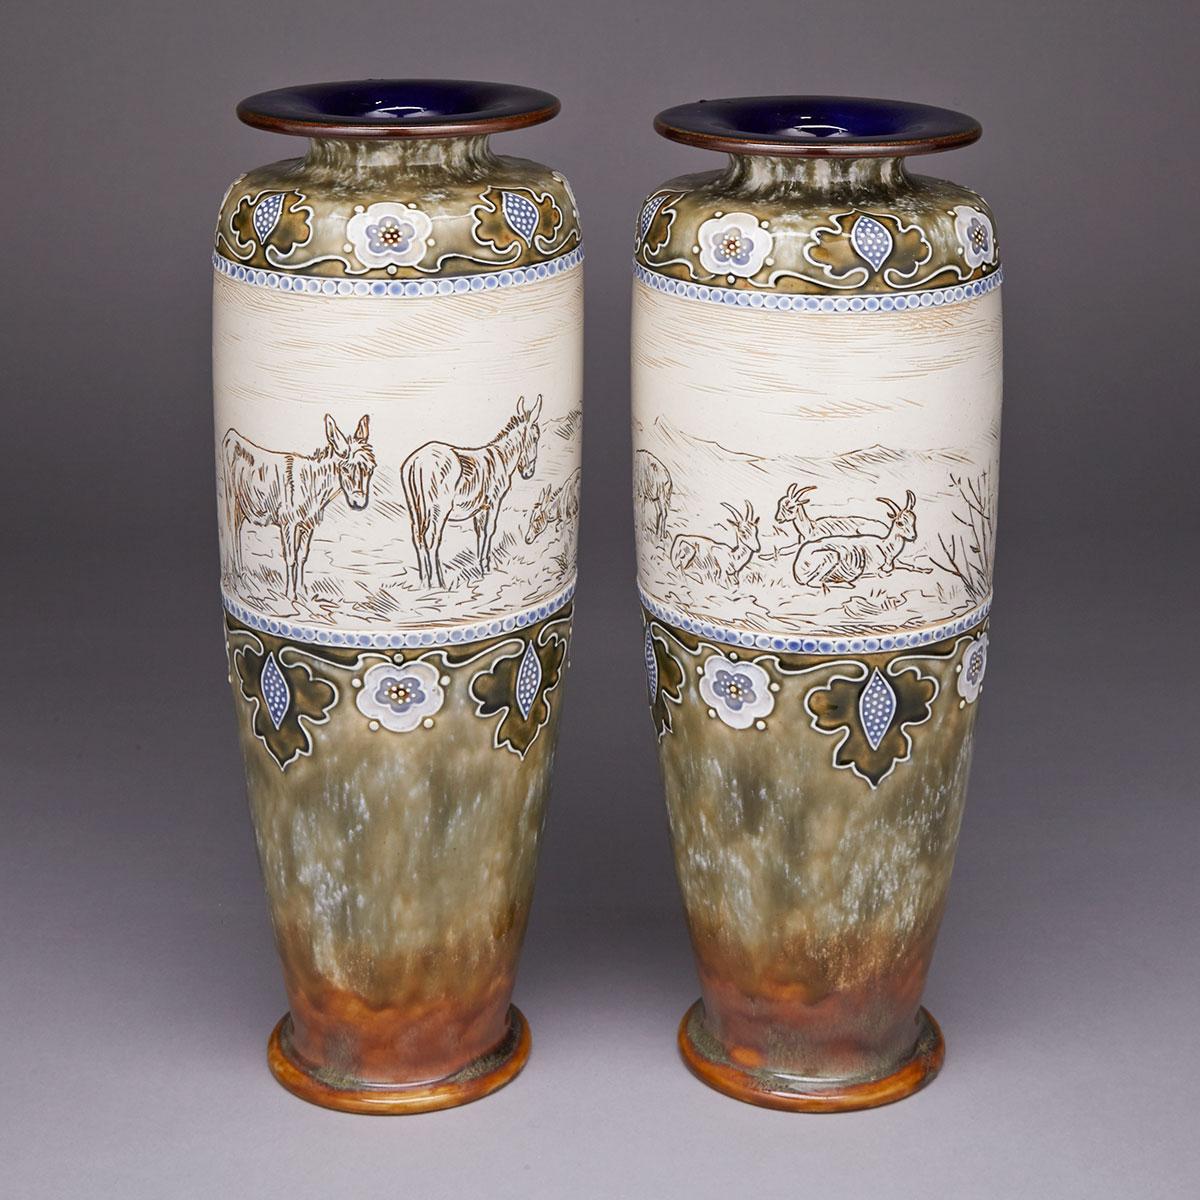 Pair of Royal Doulton Stoneware Vases, Hannah Barlow, c.1902-13